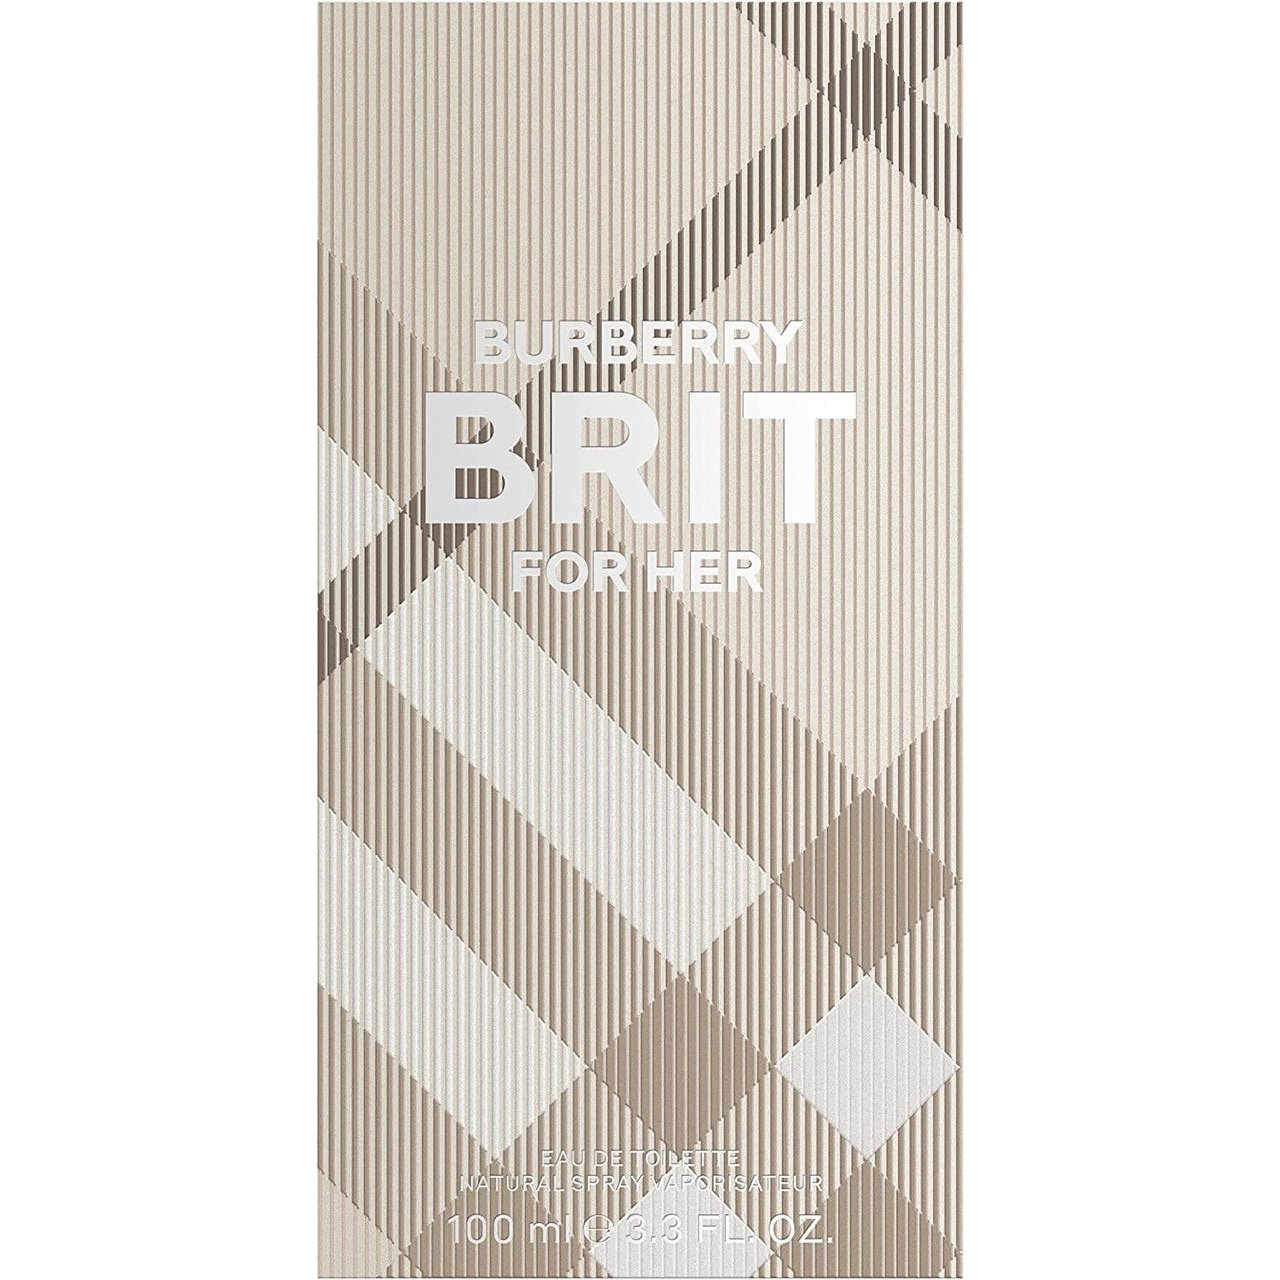 Burberry Brit Woman Eau de Toilette 100ml Spray